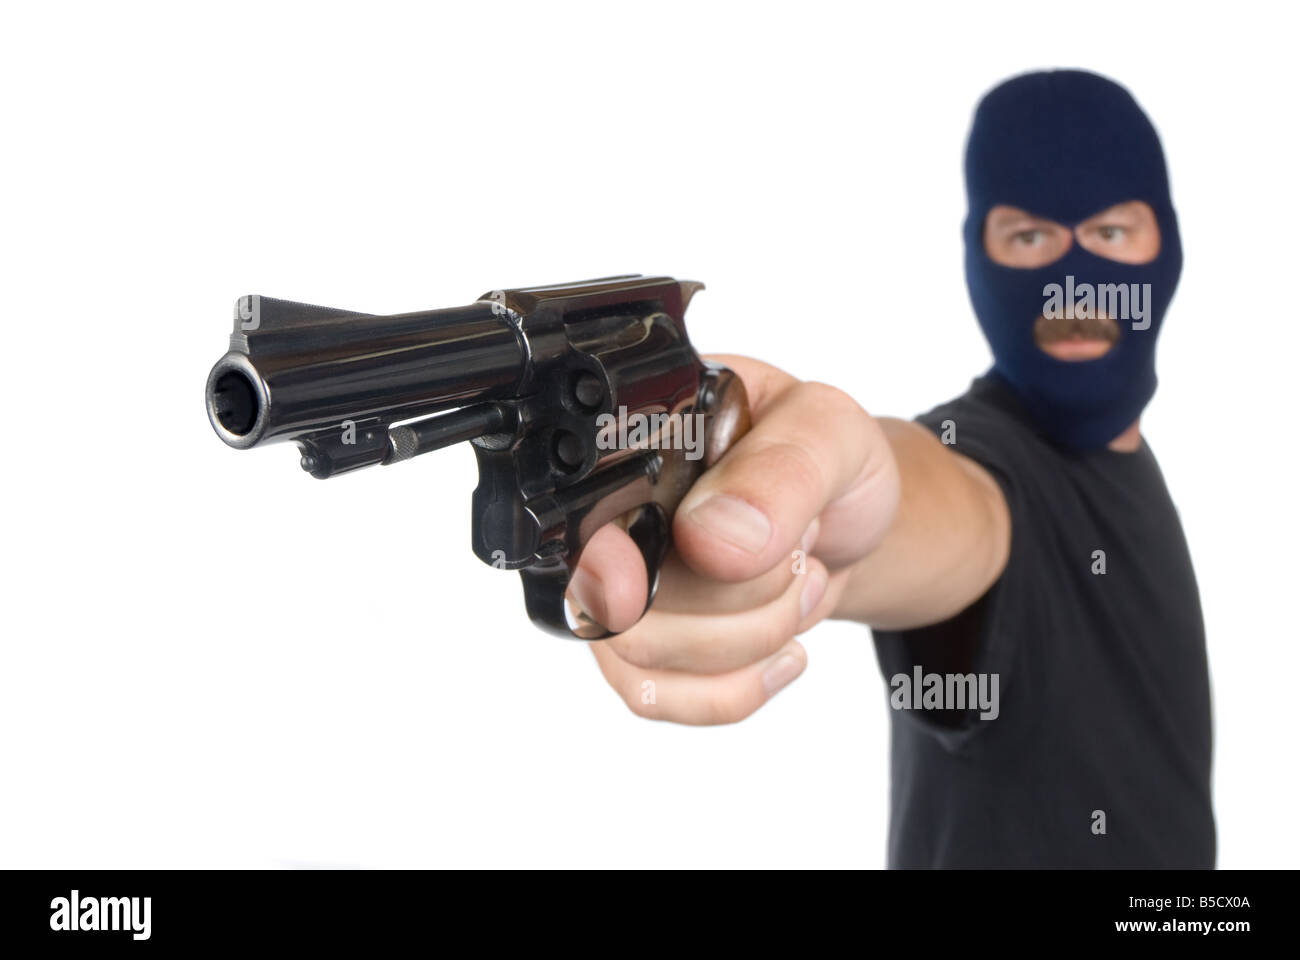 Un voleur avec son arme points face cachée dans une tentative de vol Banque D'Images